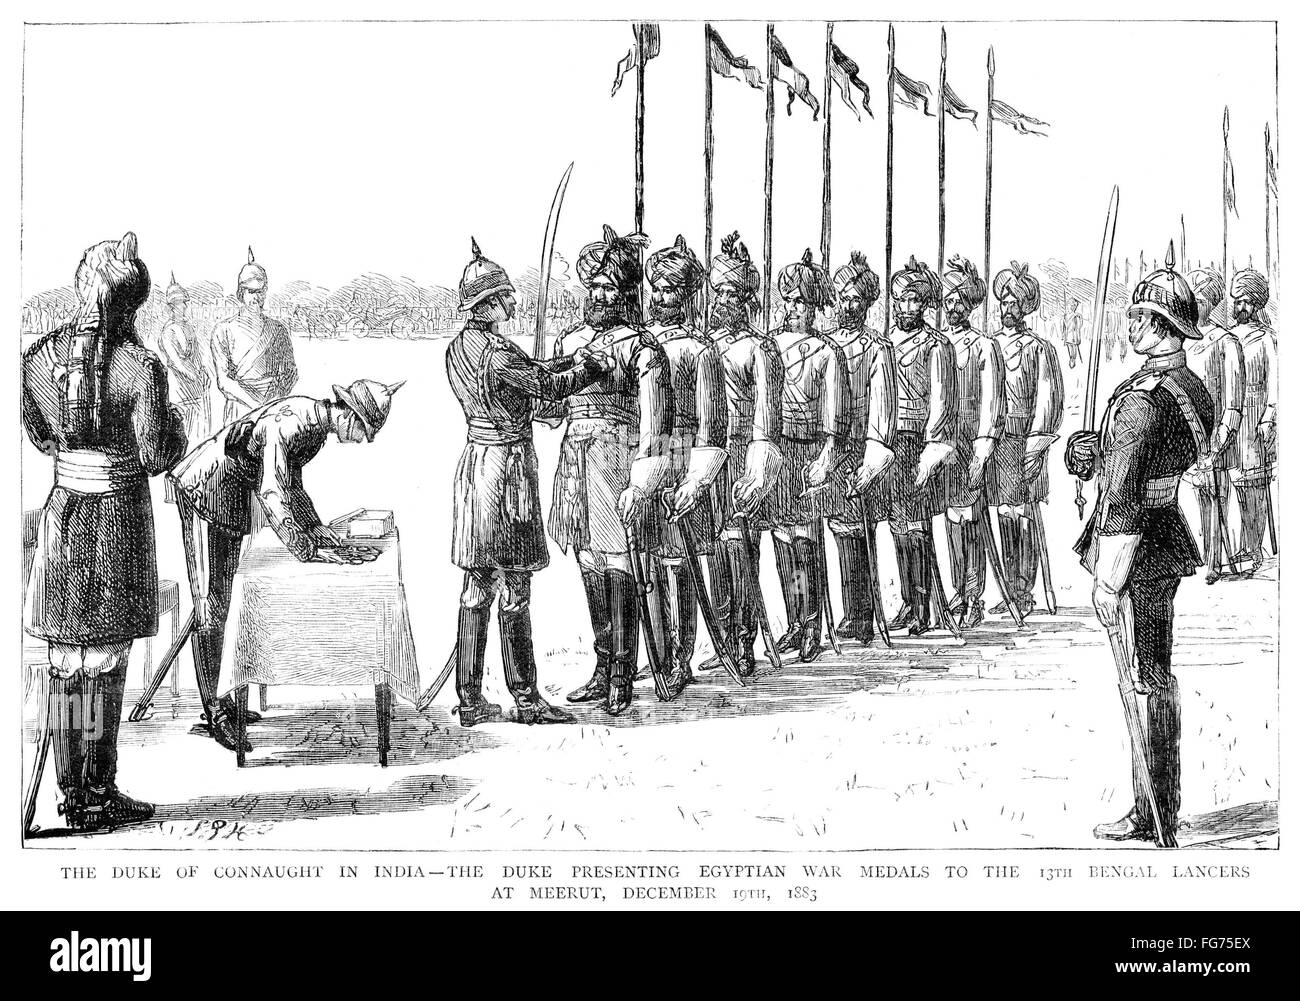 Arturo, Duque de Connaught /n(1850-1942). El príncipe británico y soldado. Presentación de guerra egipcios medallas a los 13 Bengal Lancers en Meerut, India, el 19 de diciembre de 1883. Grabado en inglés contemporáneo. Foto de stock